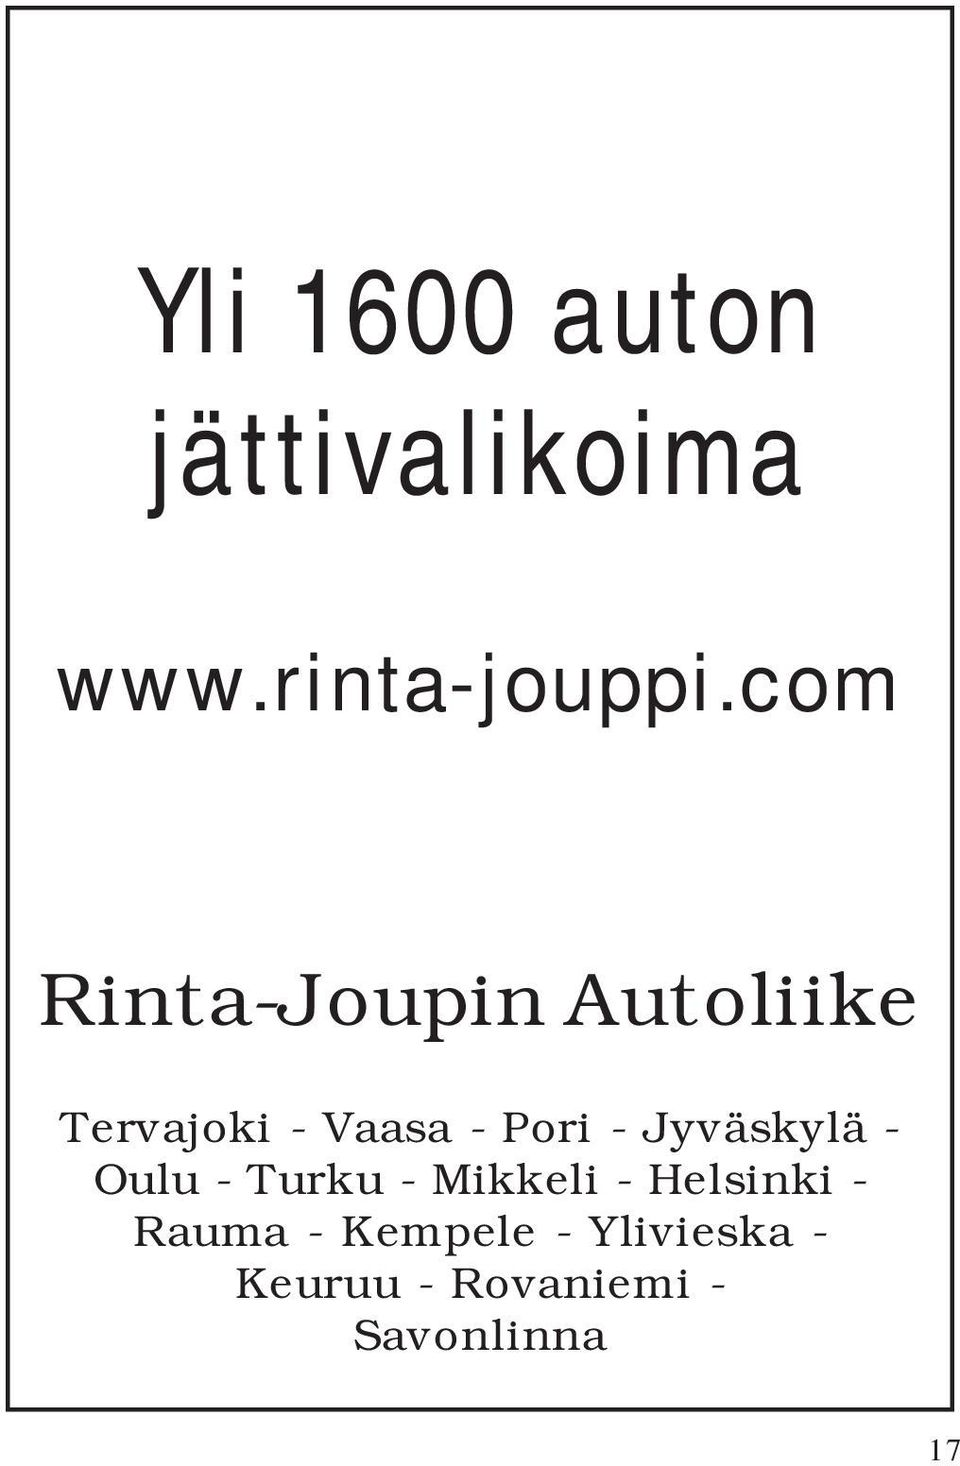 Jyväskylä - Oulu - Turku - Mikkeli - Helsinki - Rauma